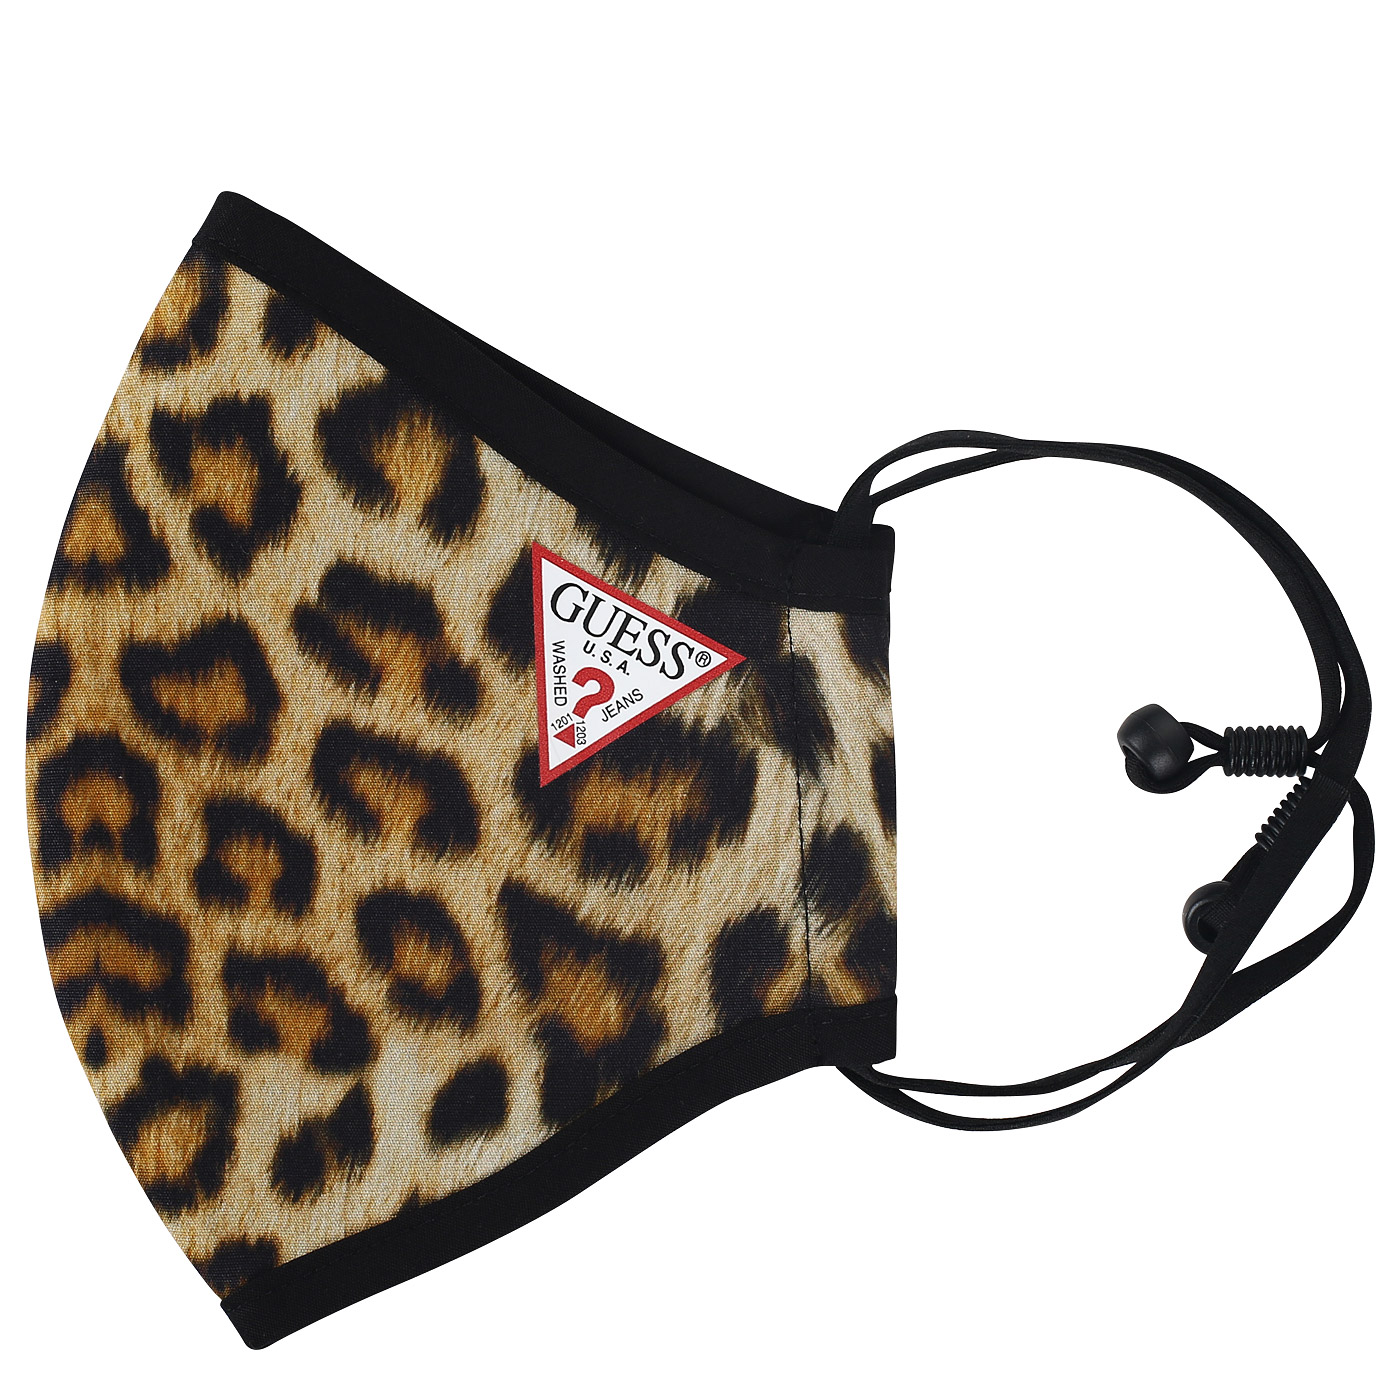 Защитная маска цвета леопард Guess Accessories